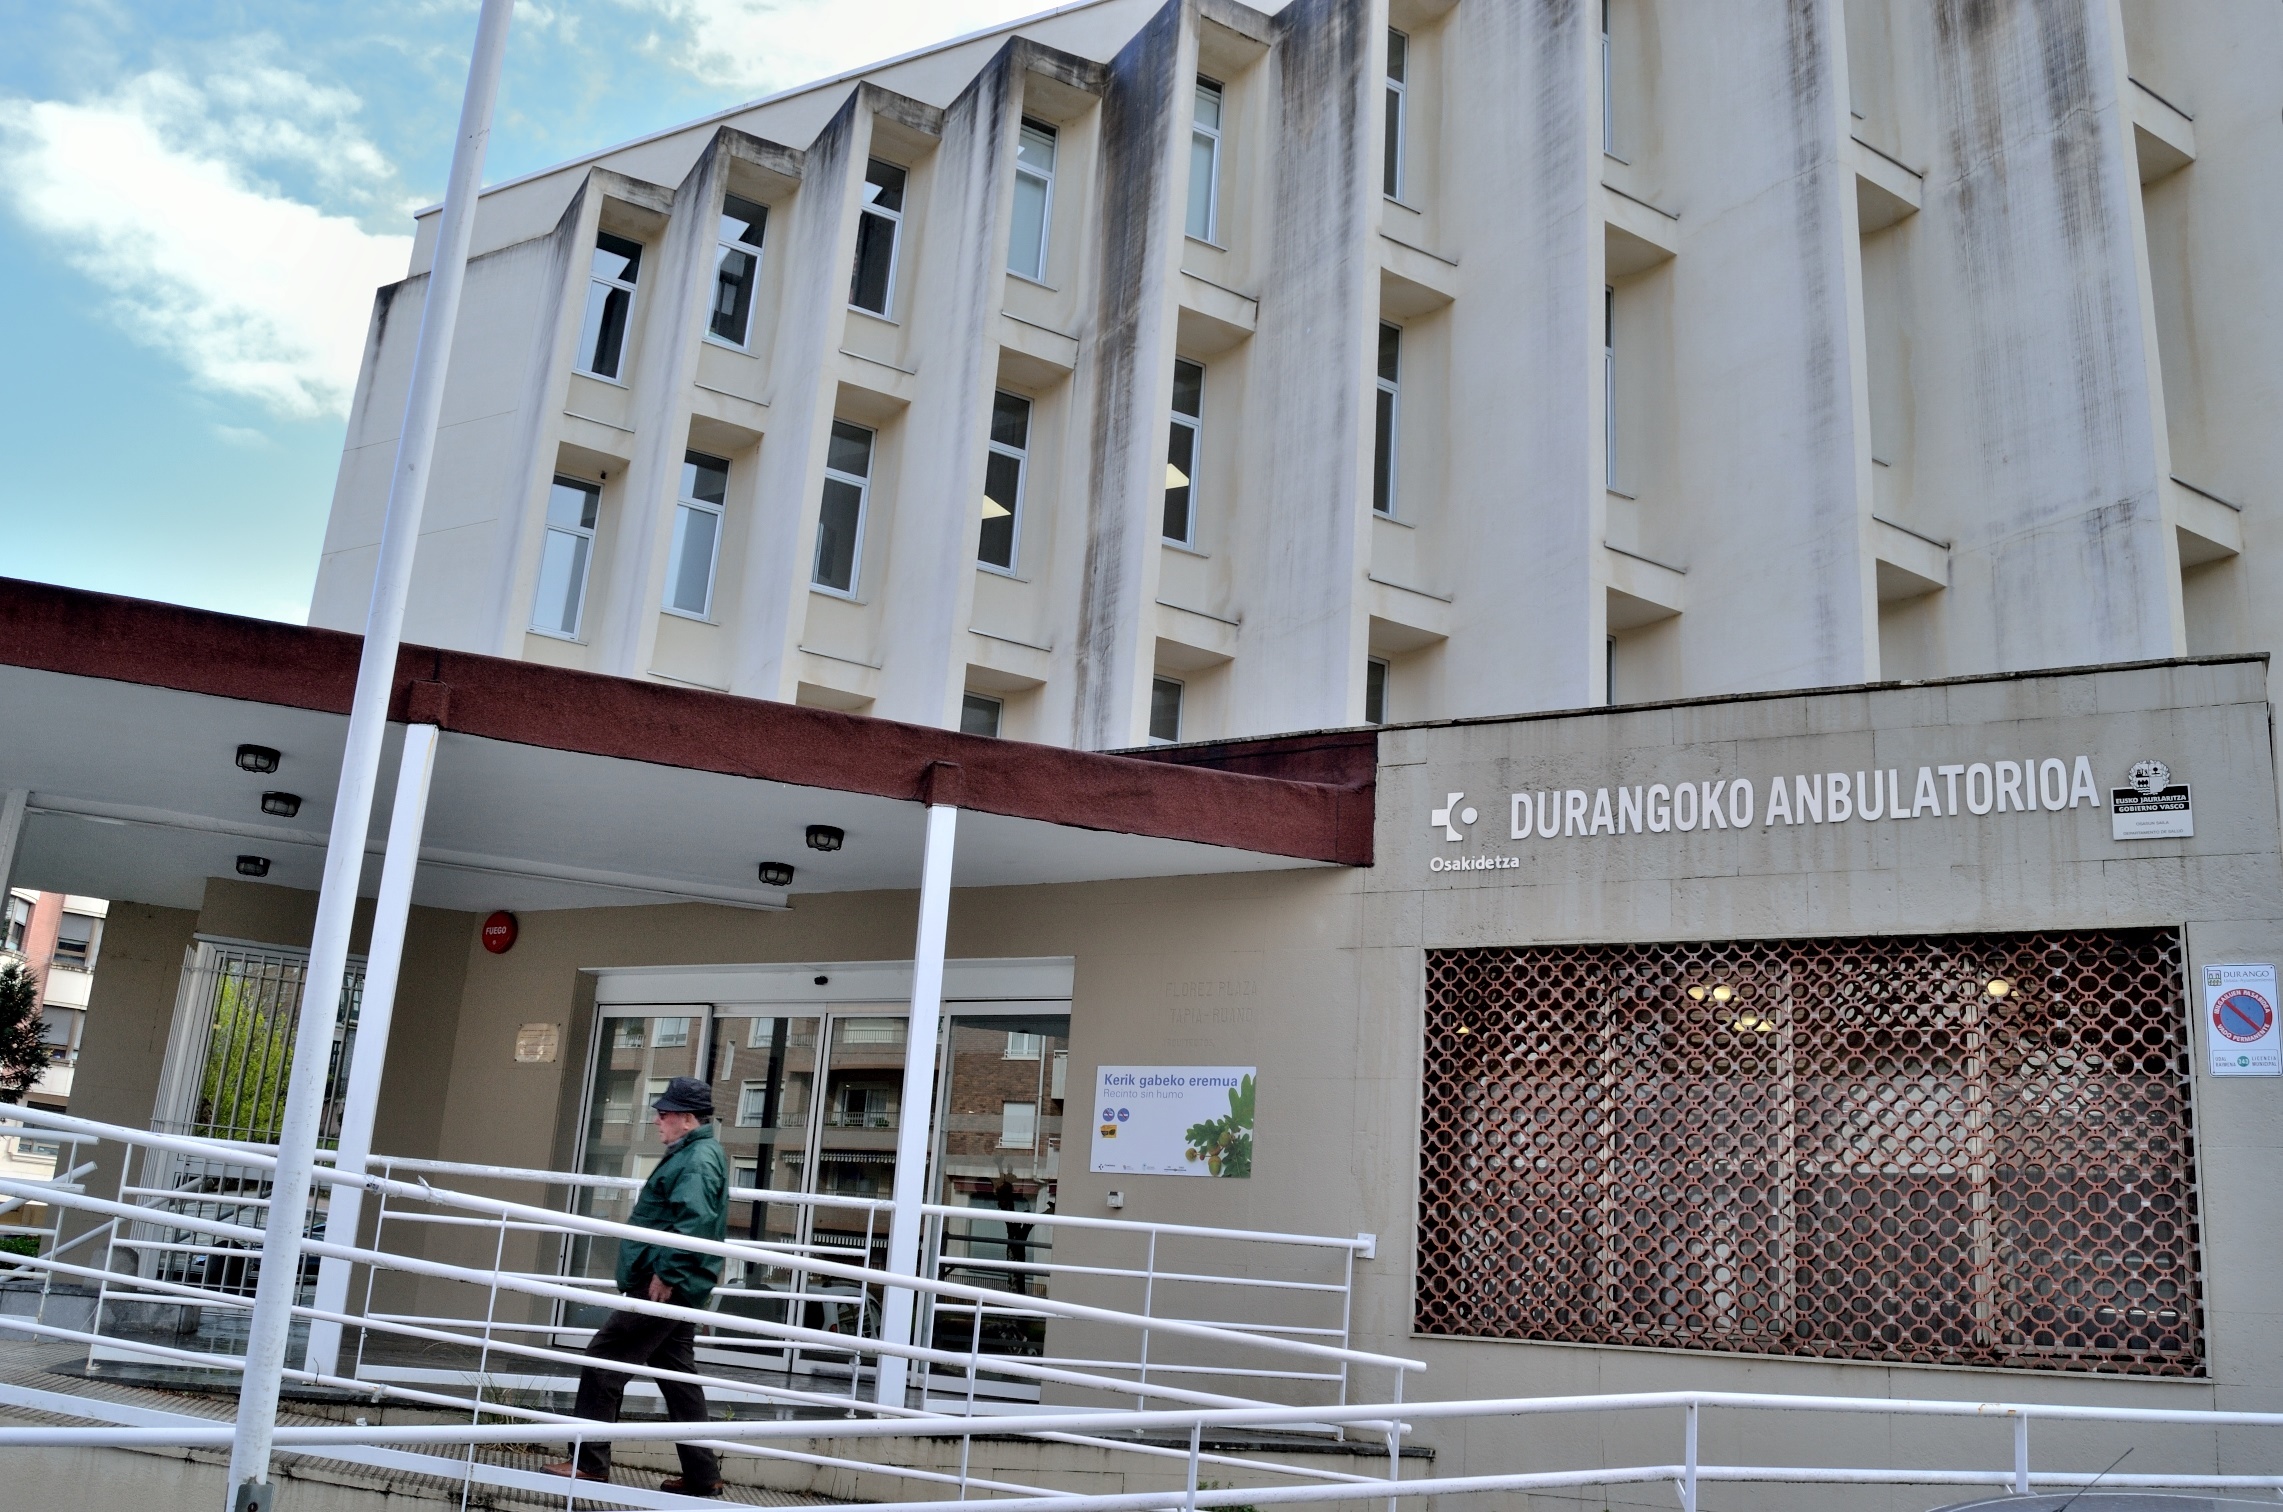 Centros de salud de Durango y Amorebieta atenderán a personas con síntomas respiratorios